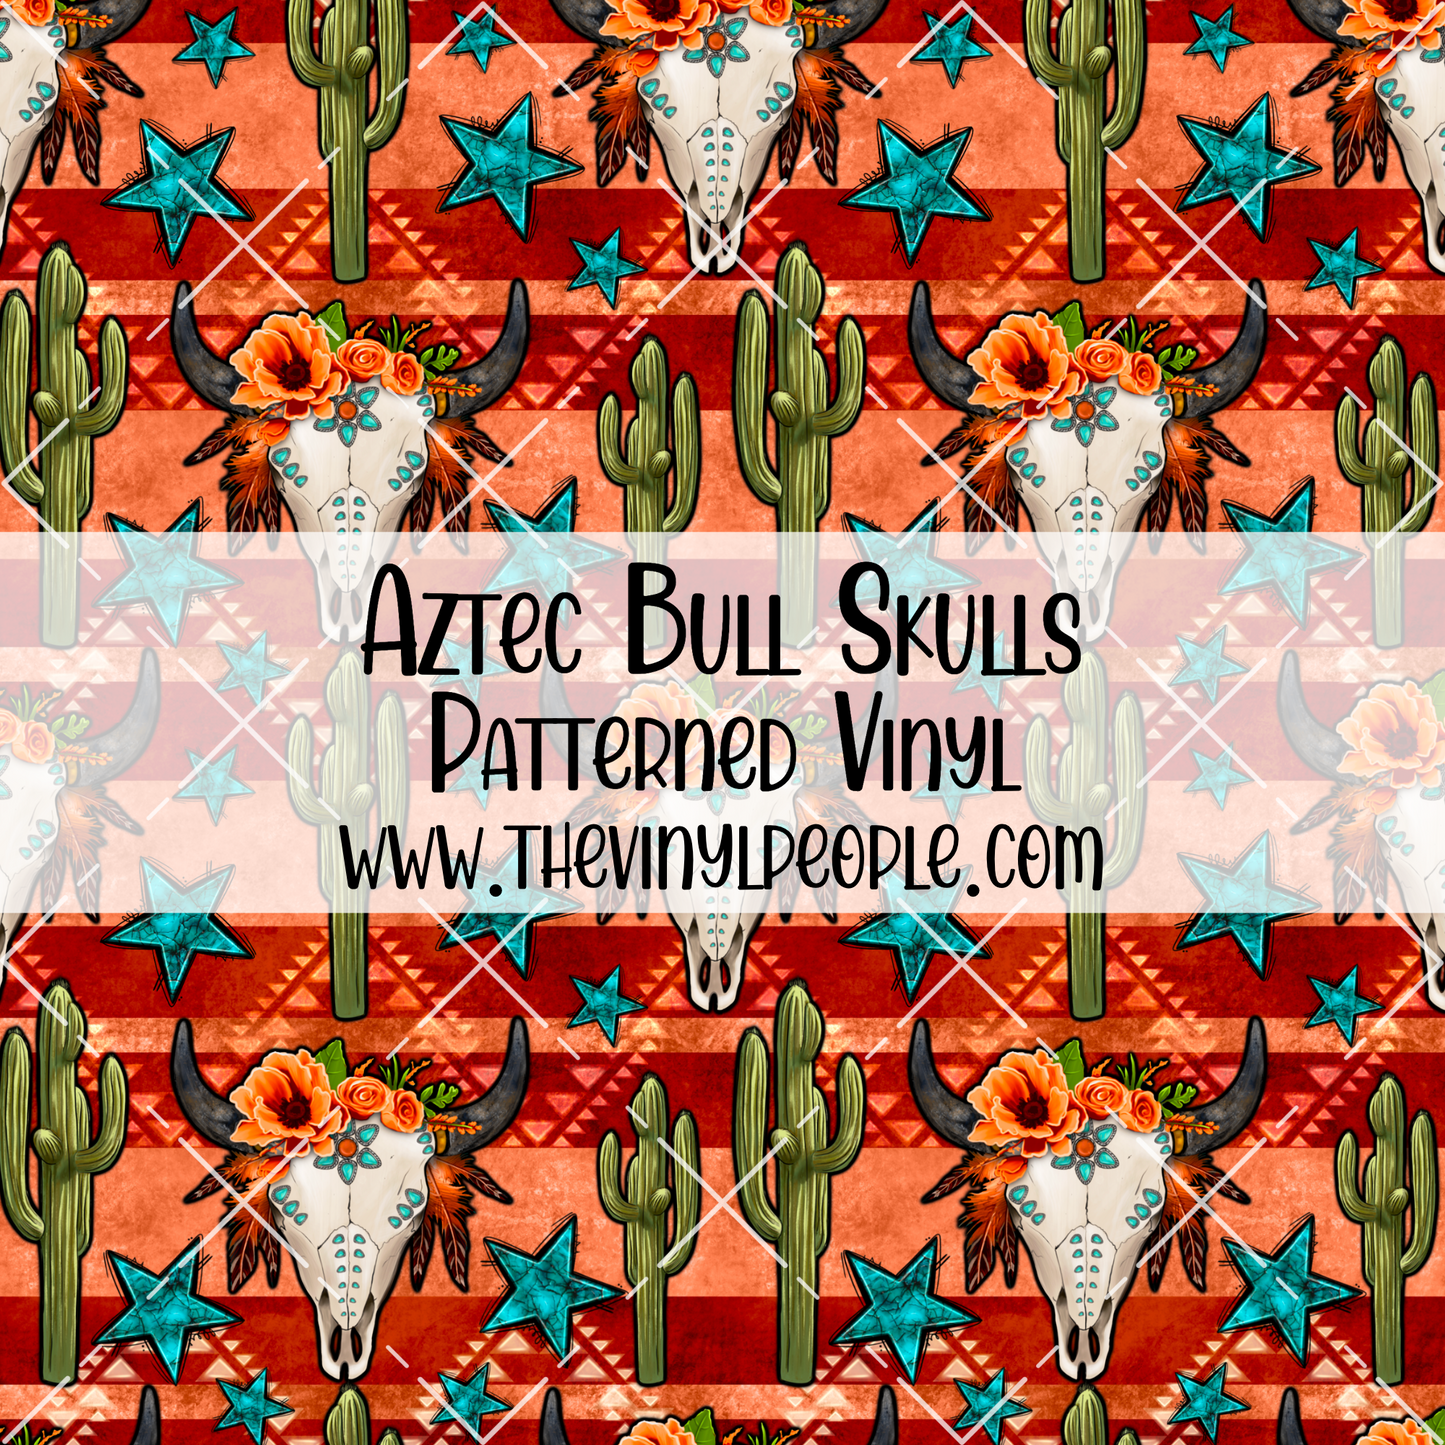 Aztec Bull Skulls Patterned Vinyl